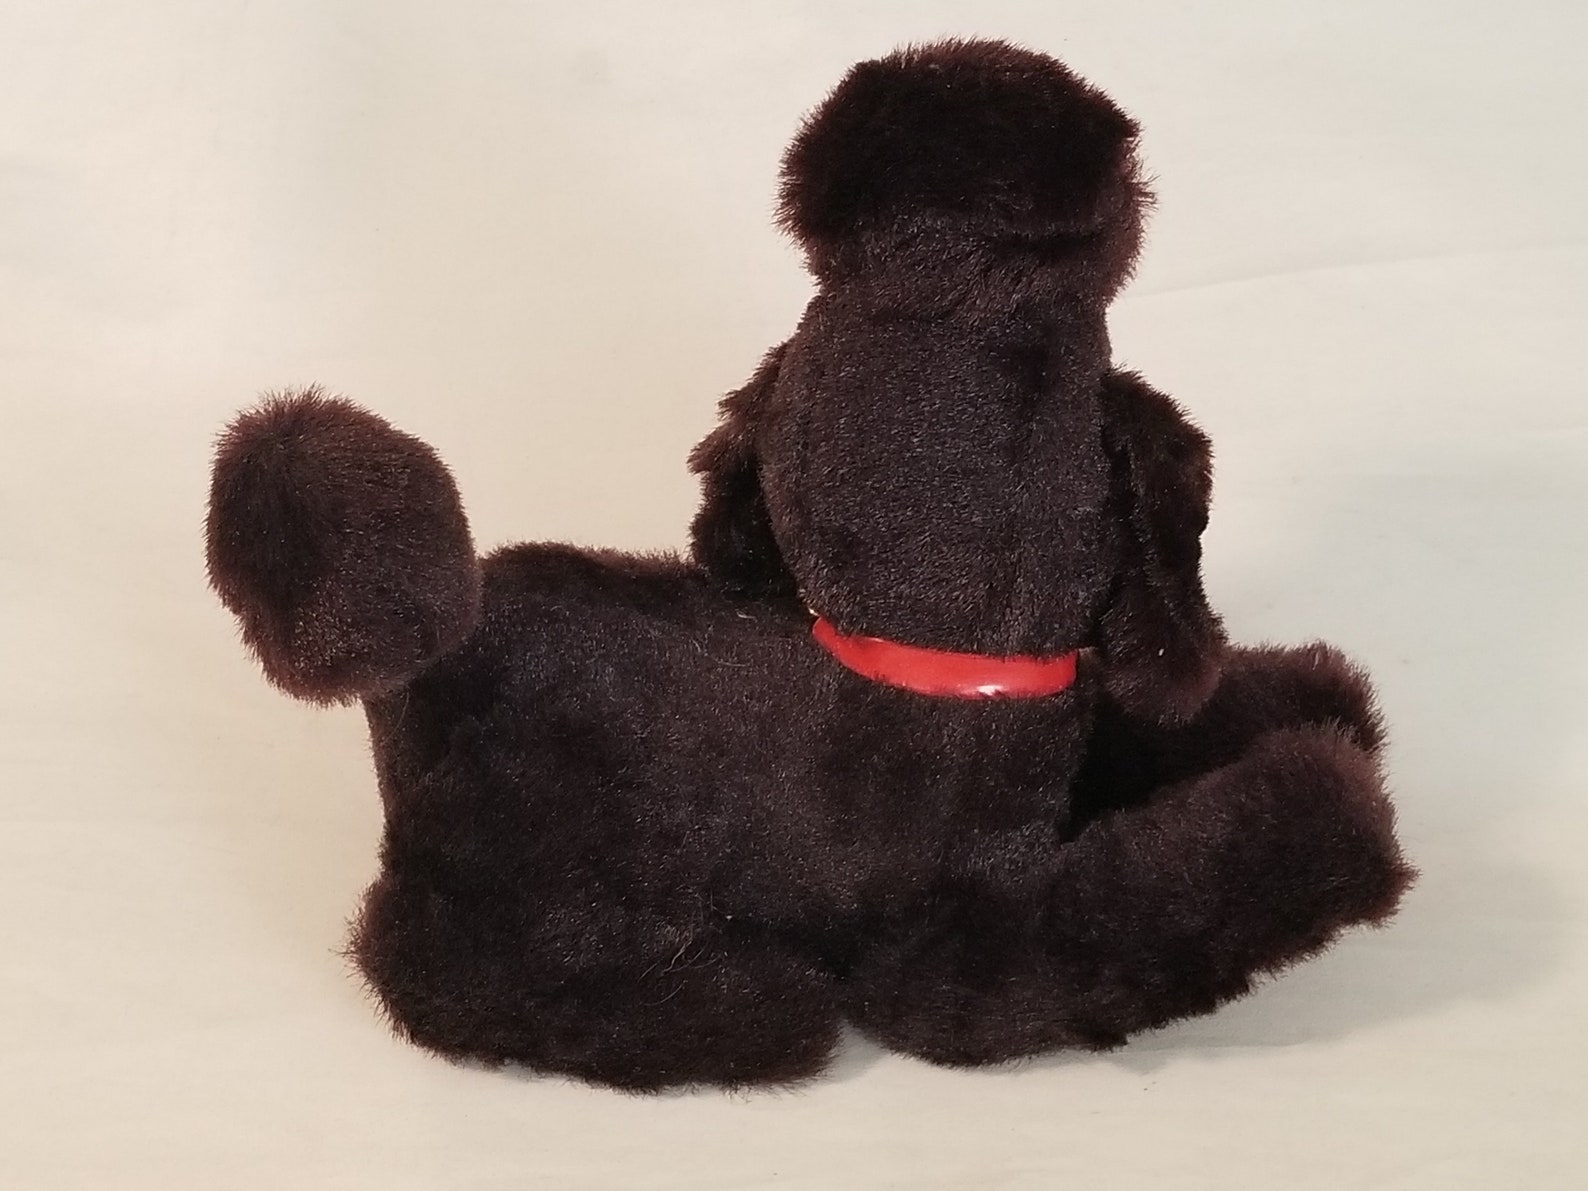 Vintage Retro Poodle Radio Stuffed Poodle / Animal Dark - Etsy